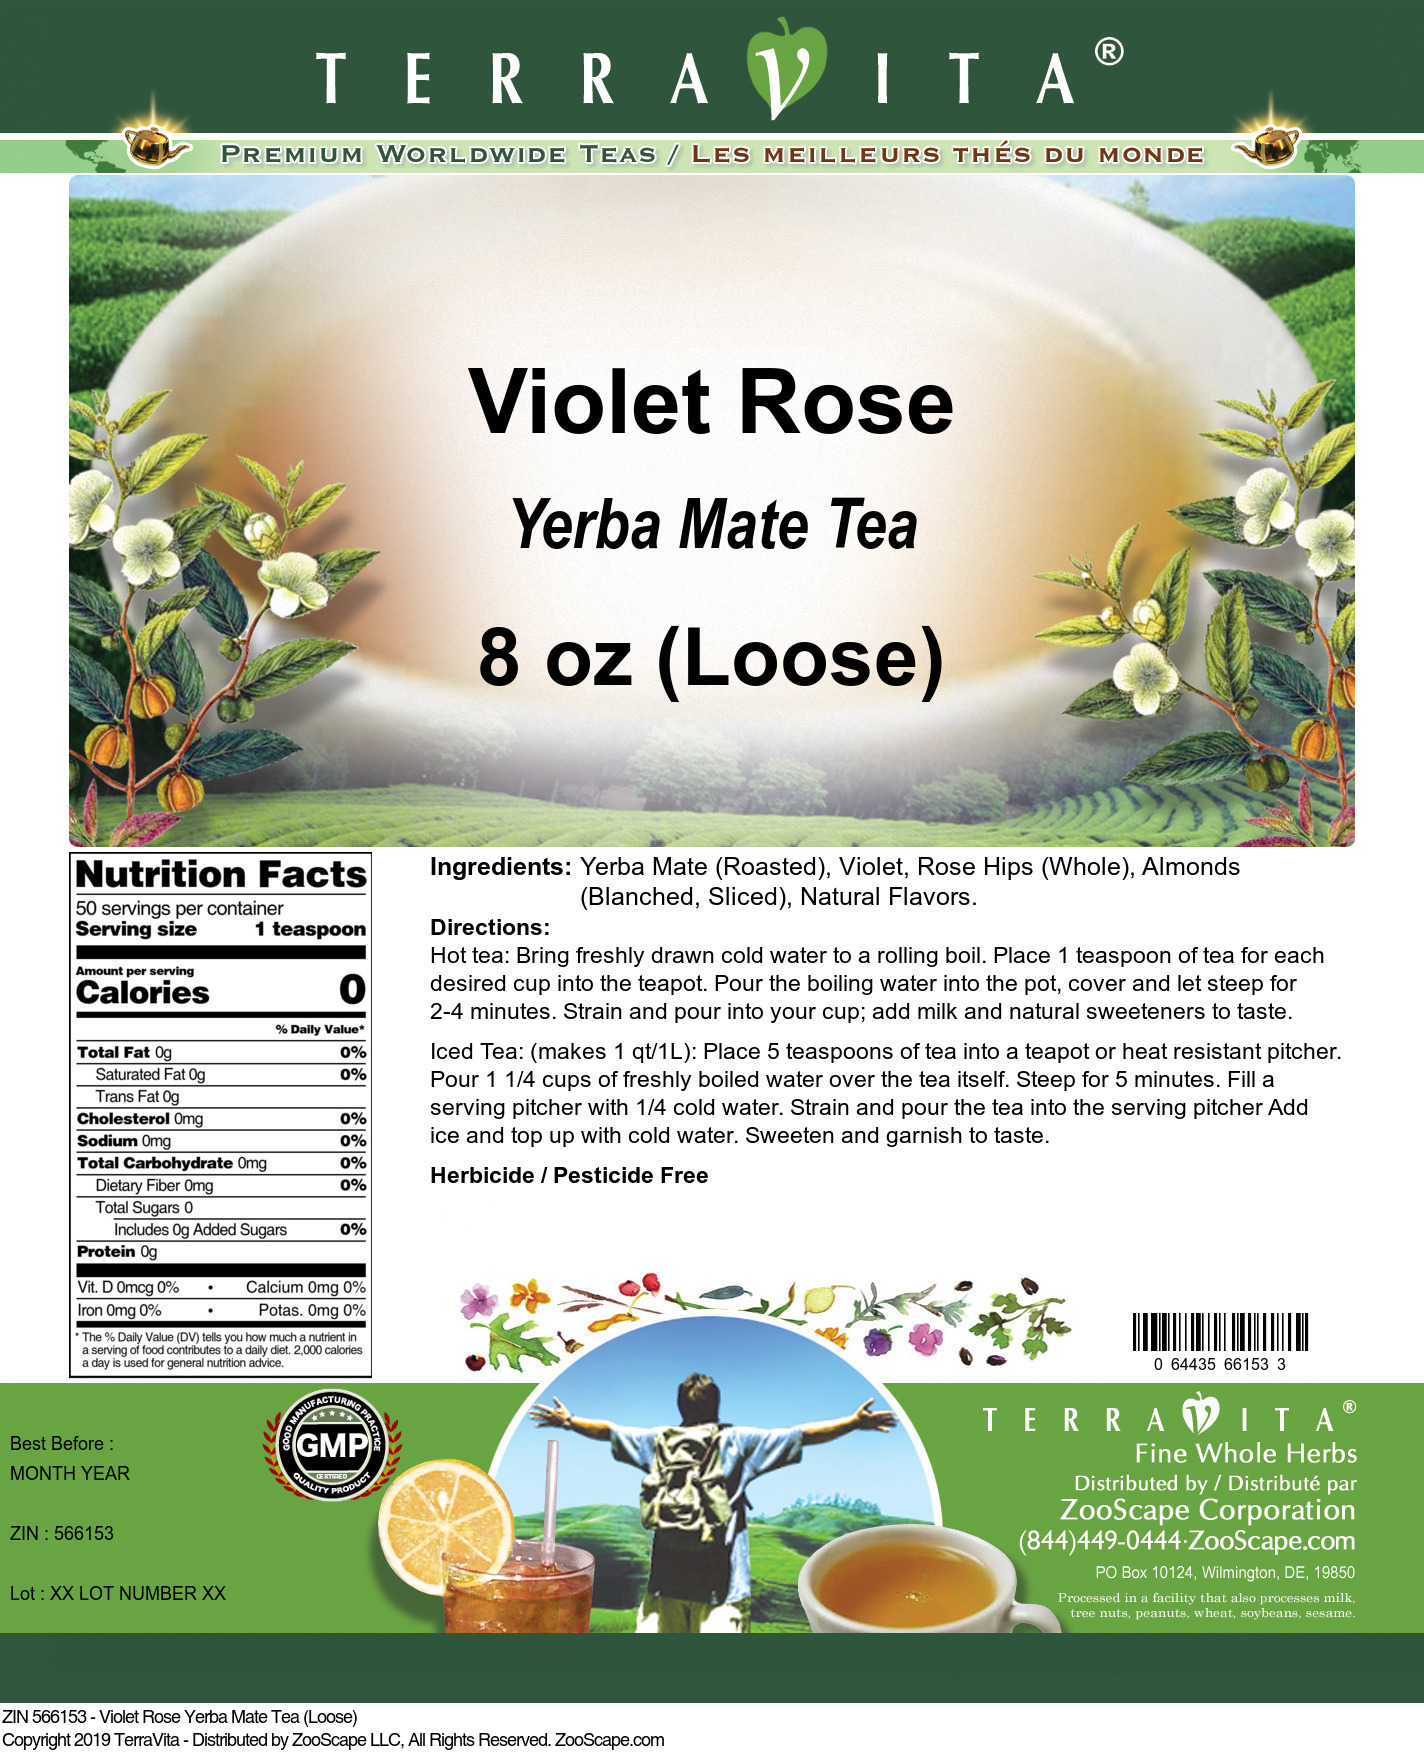 Violet Rose Yerba Mate Tea (Loose) - Label